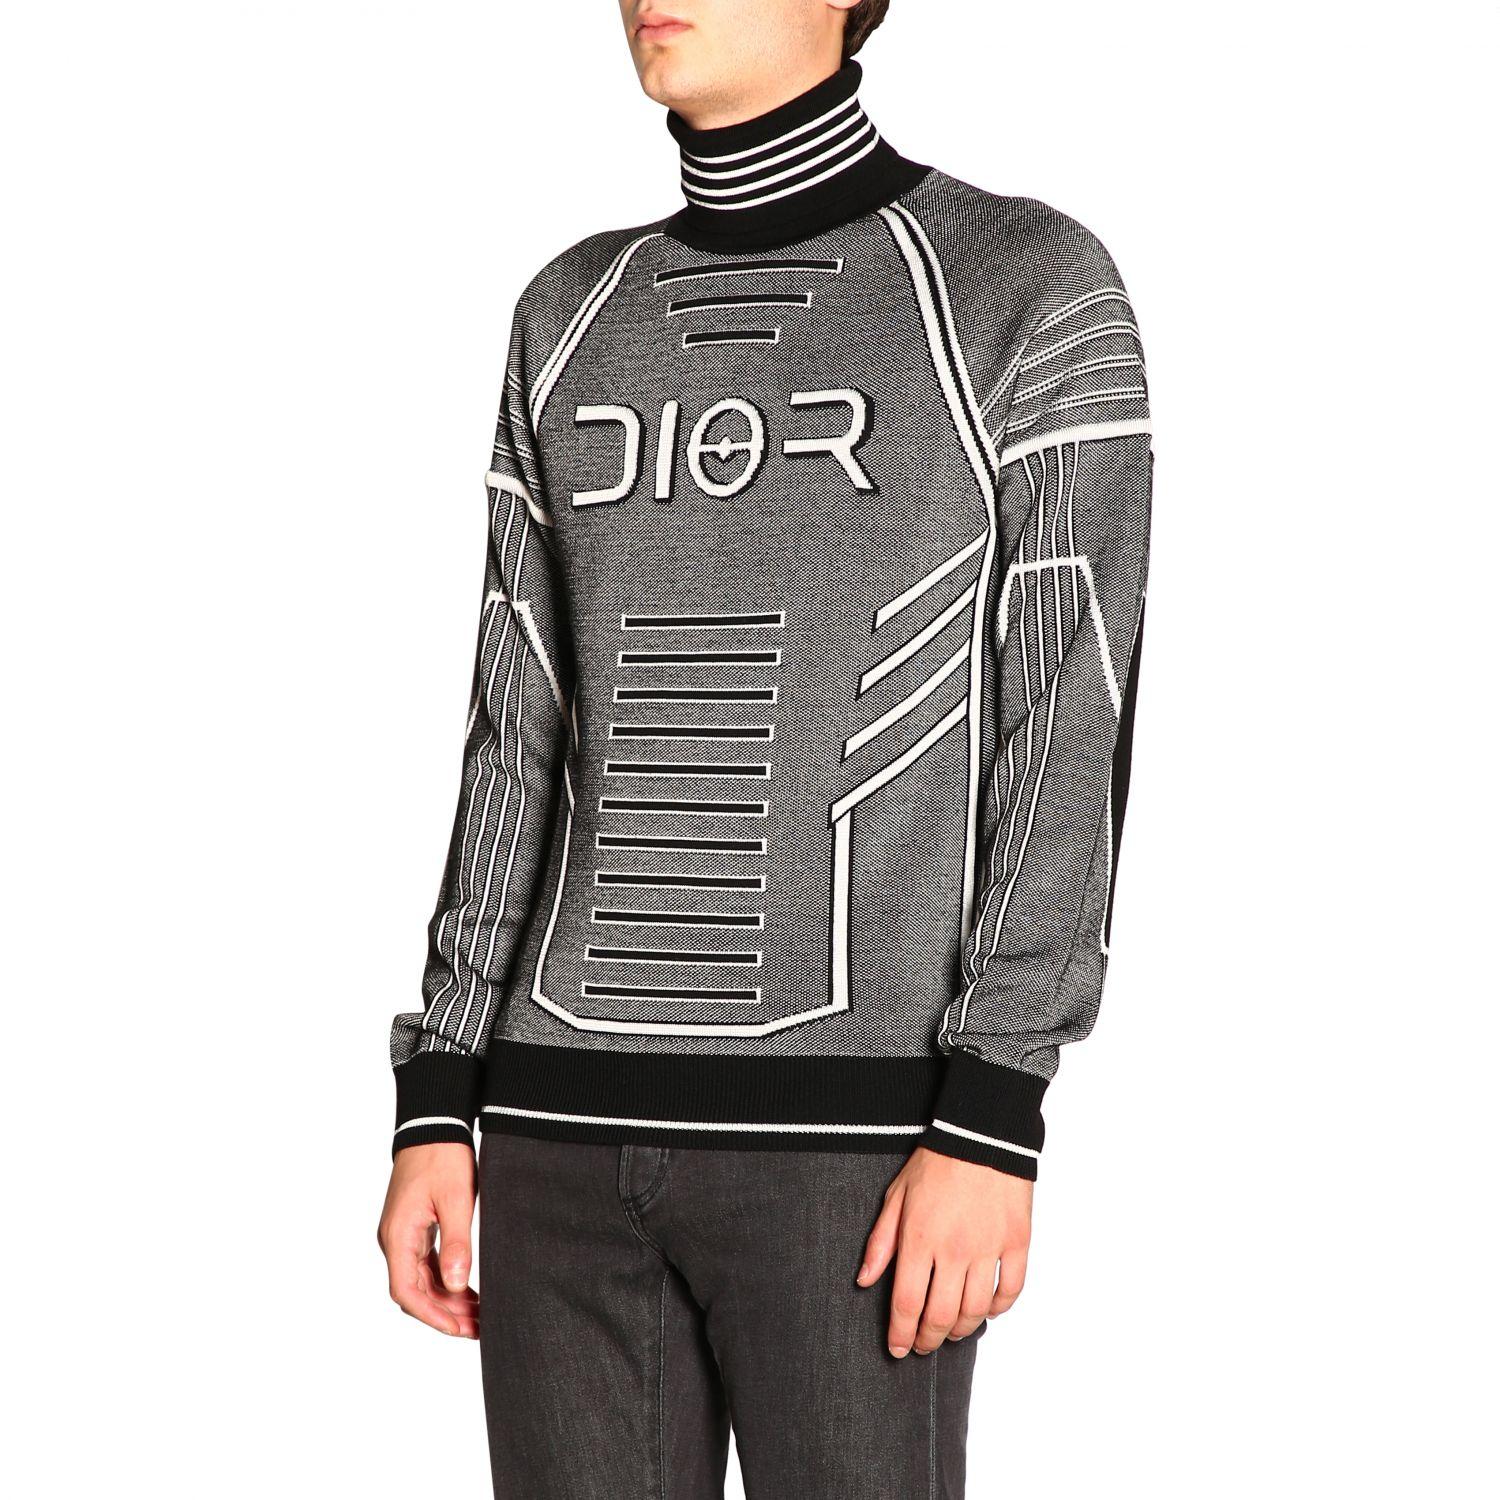 Dior Homme Sweater Sweden, SAVE 34% - raptorunderlayment.com